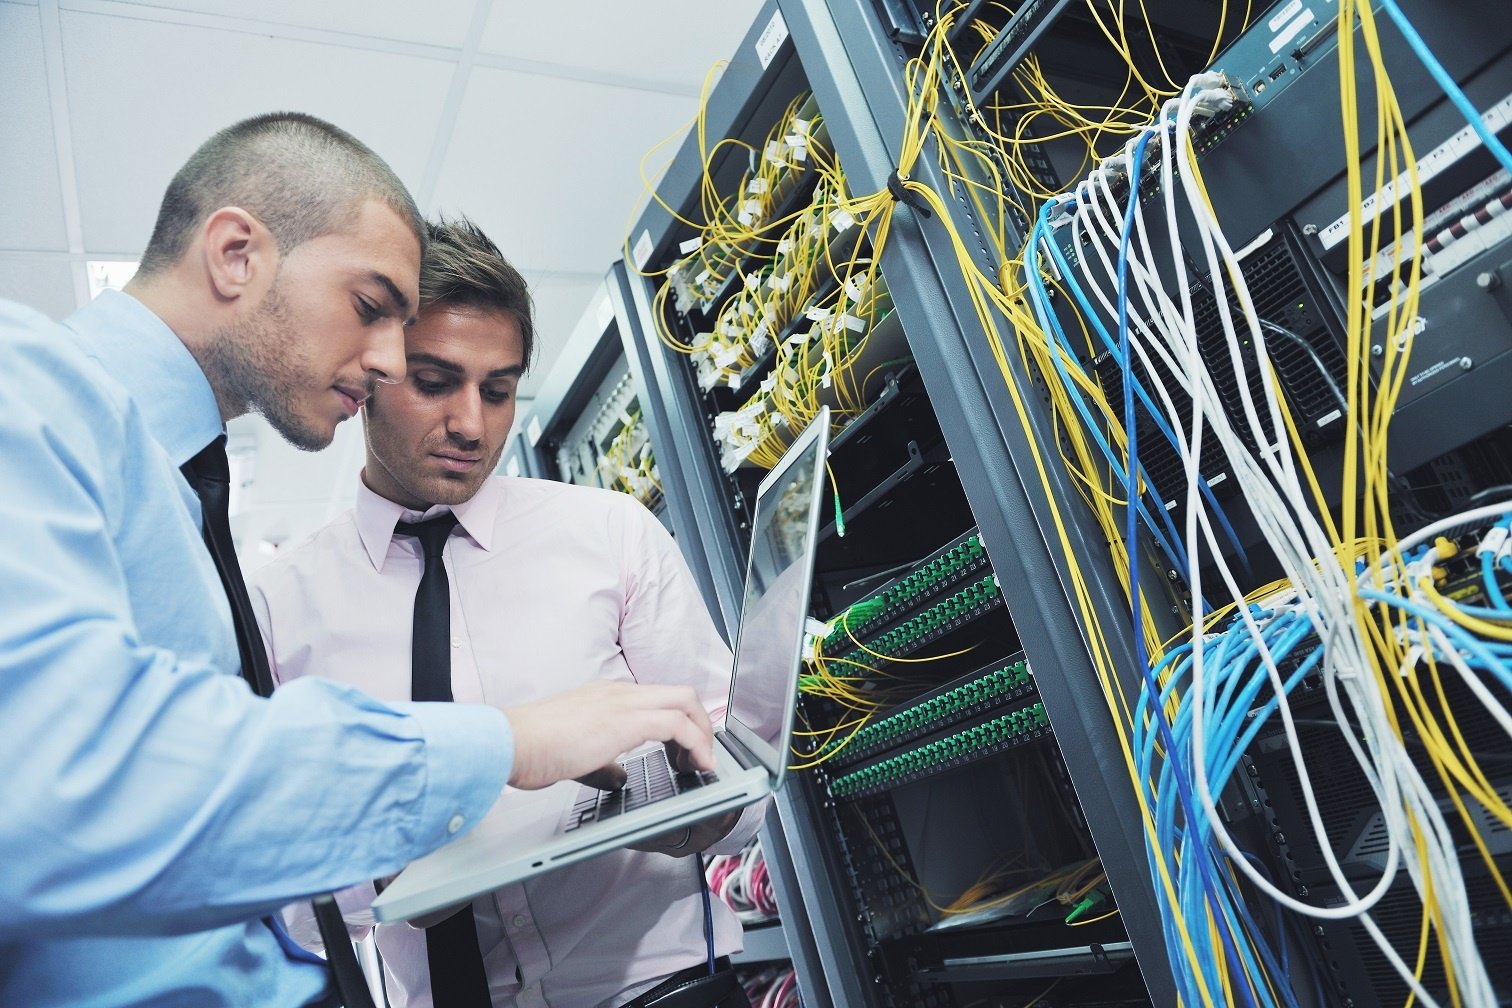 businessmen in a network server room